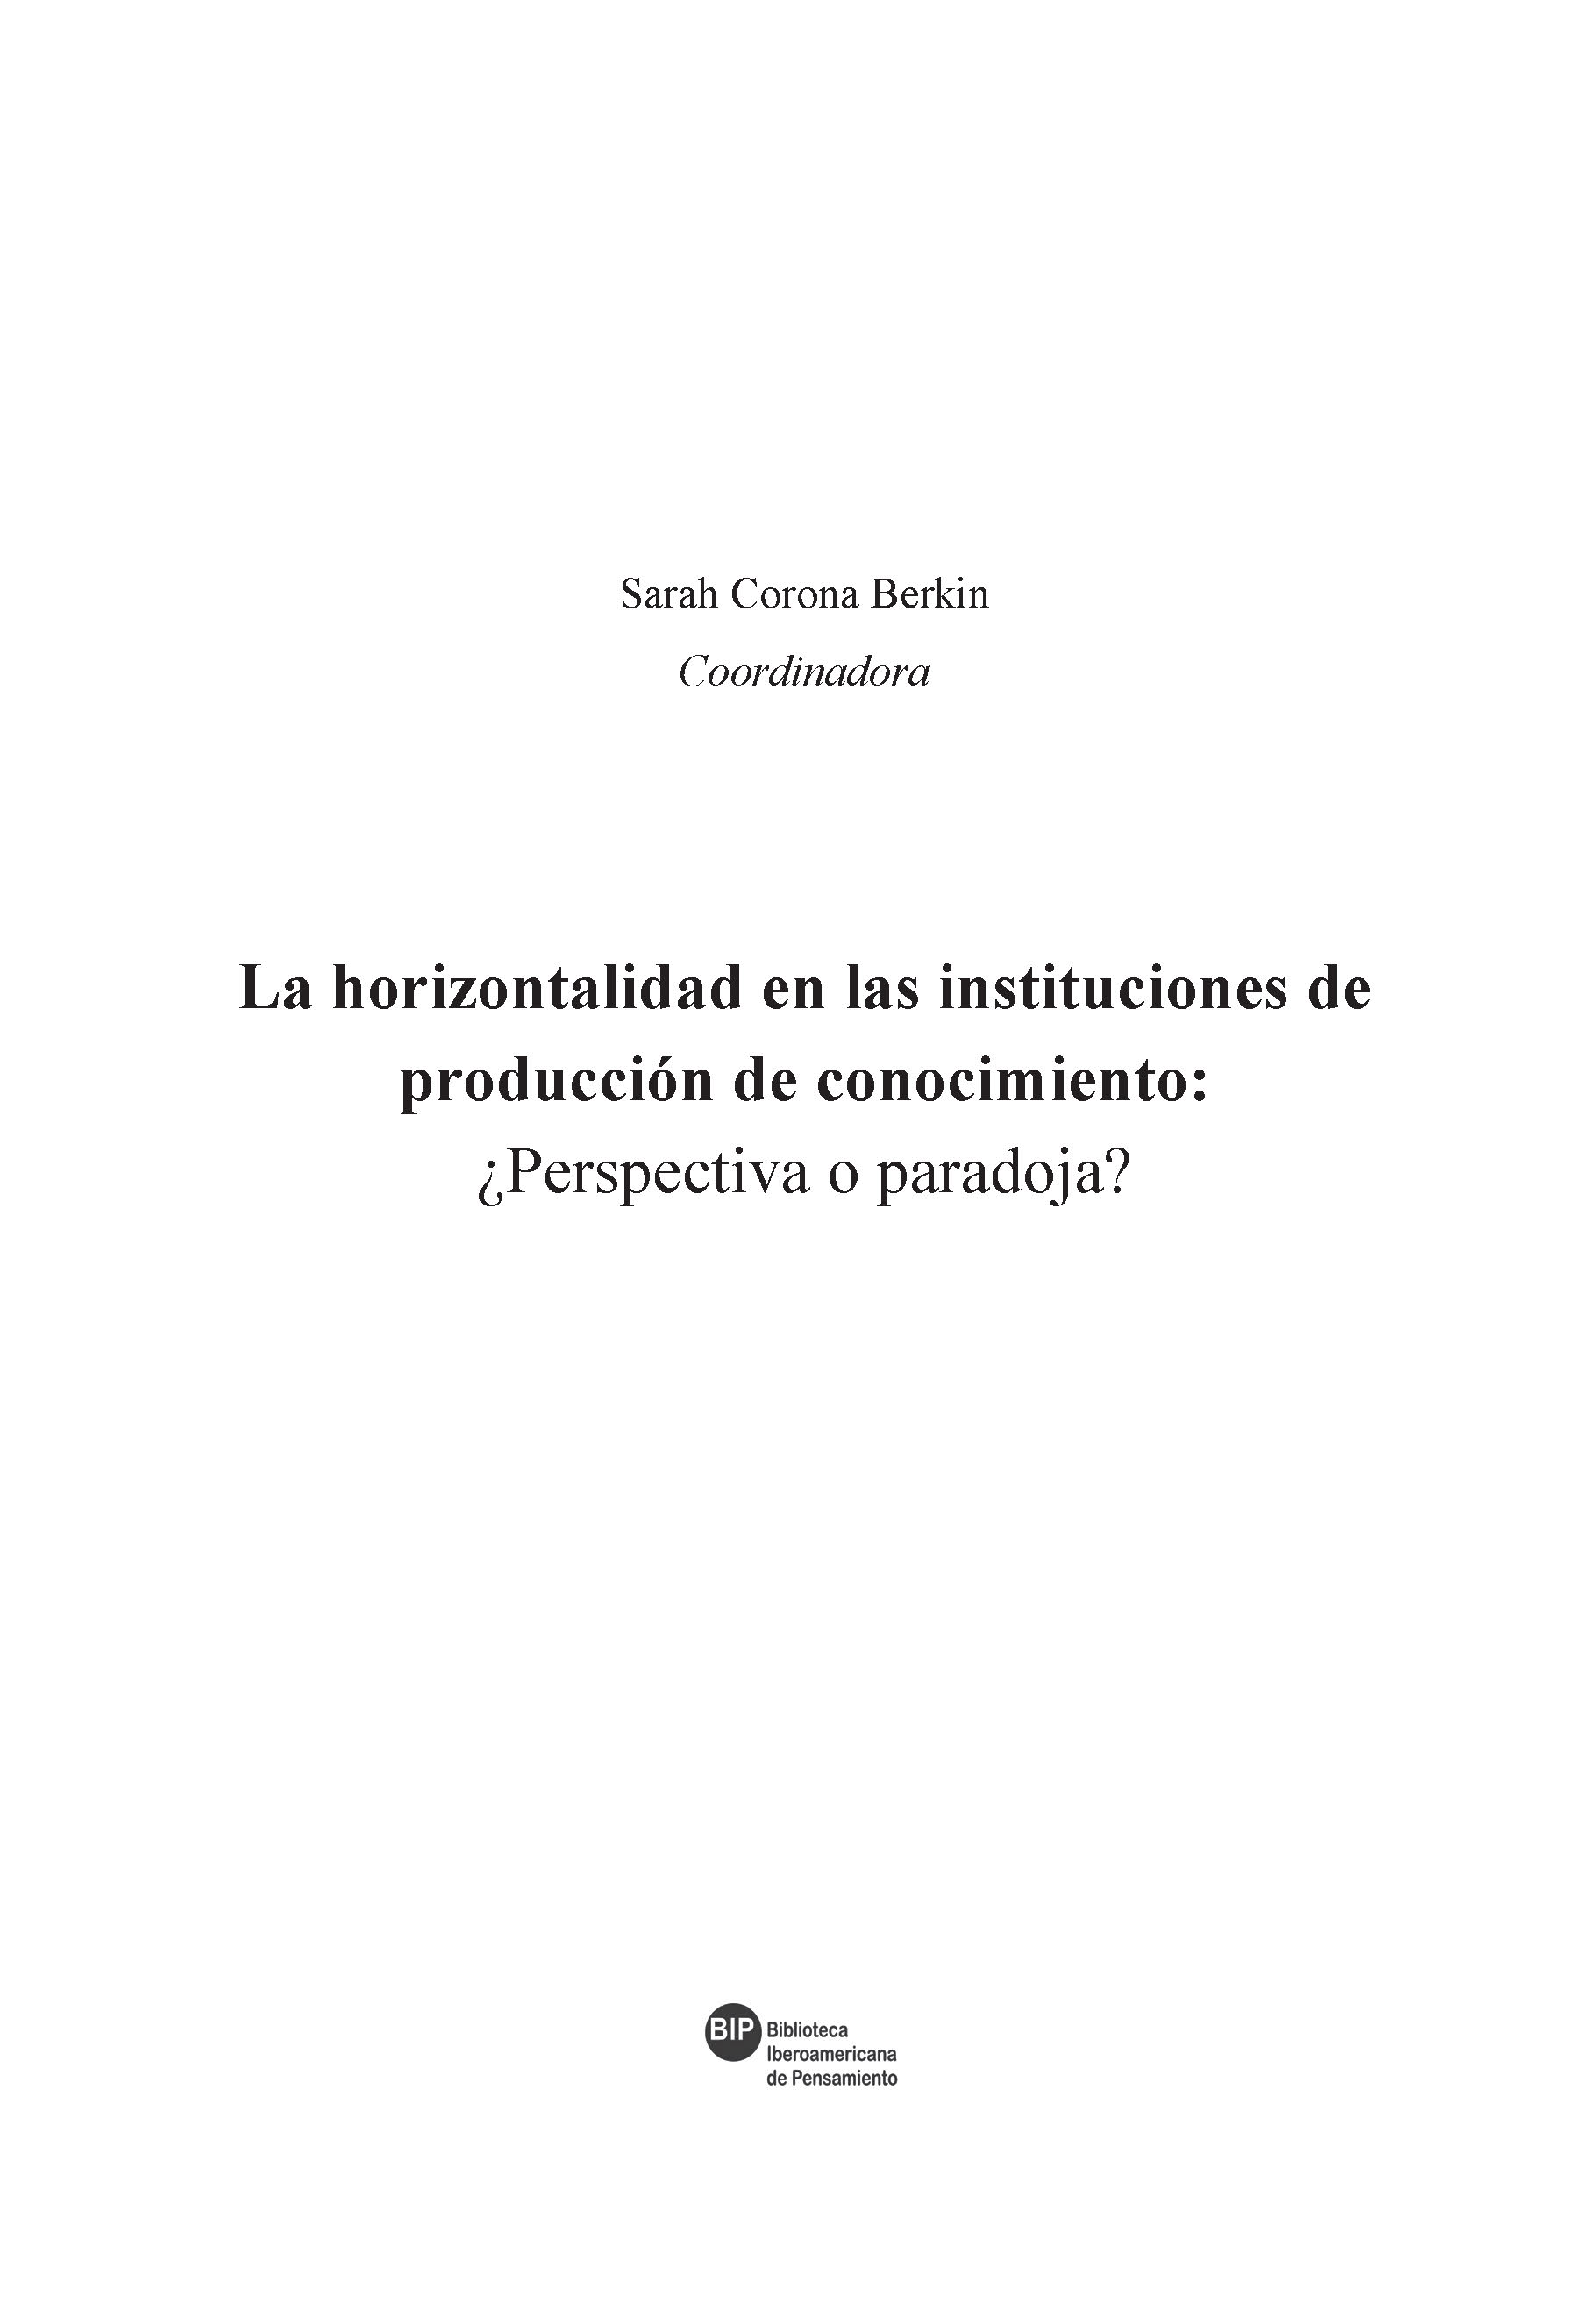 La horizontalidad en las instituciones de producción de conocimiento - photo 2